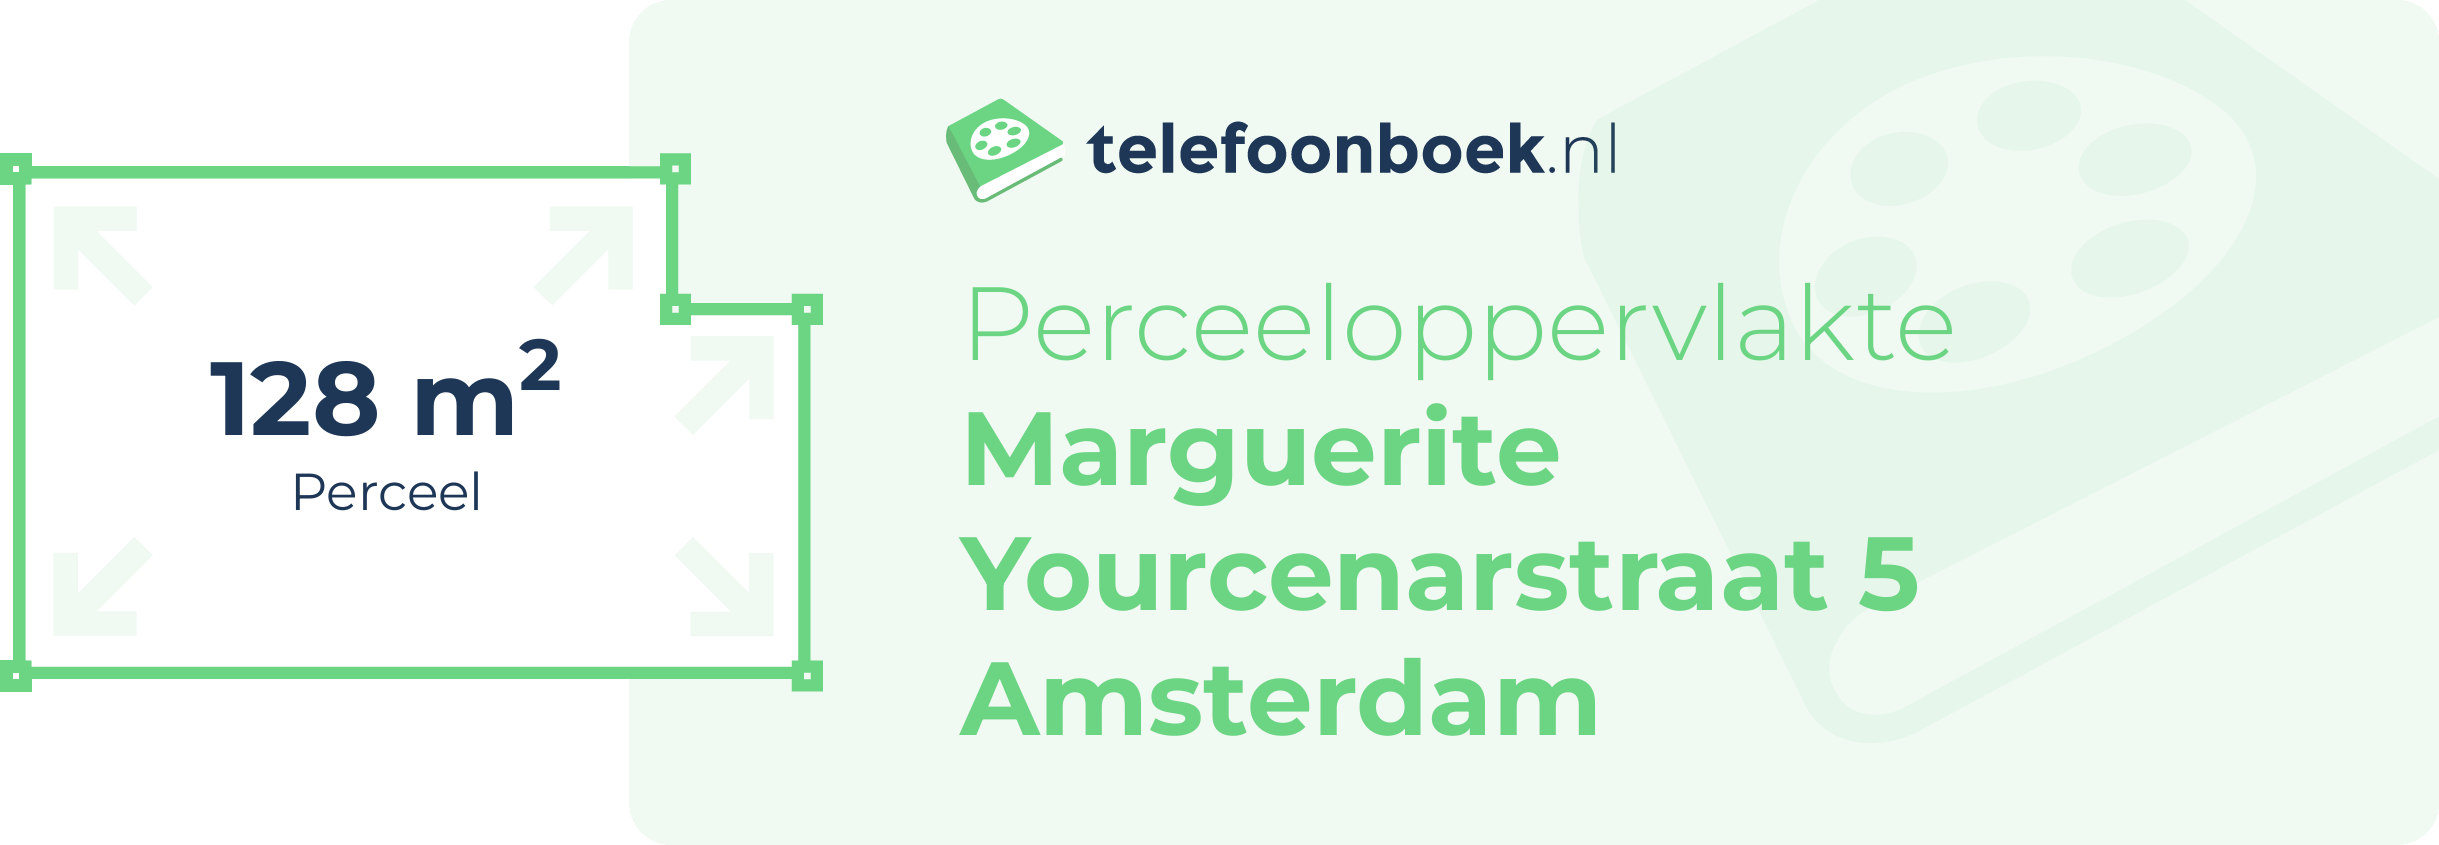 Perceeloppervlakte Marguerite Yourcenarstraat 5 Amsterdam